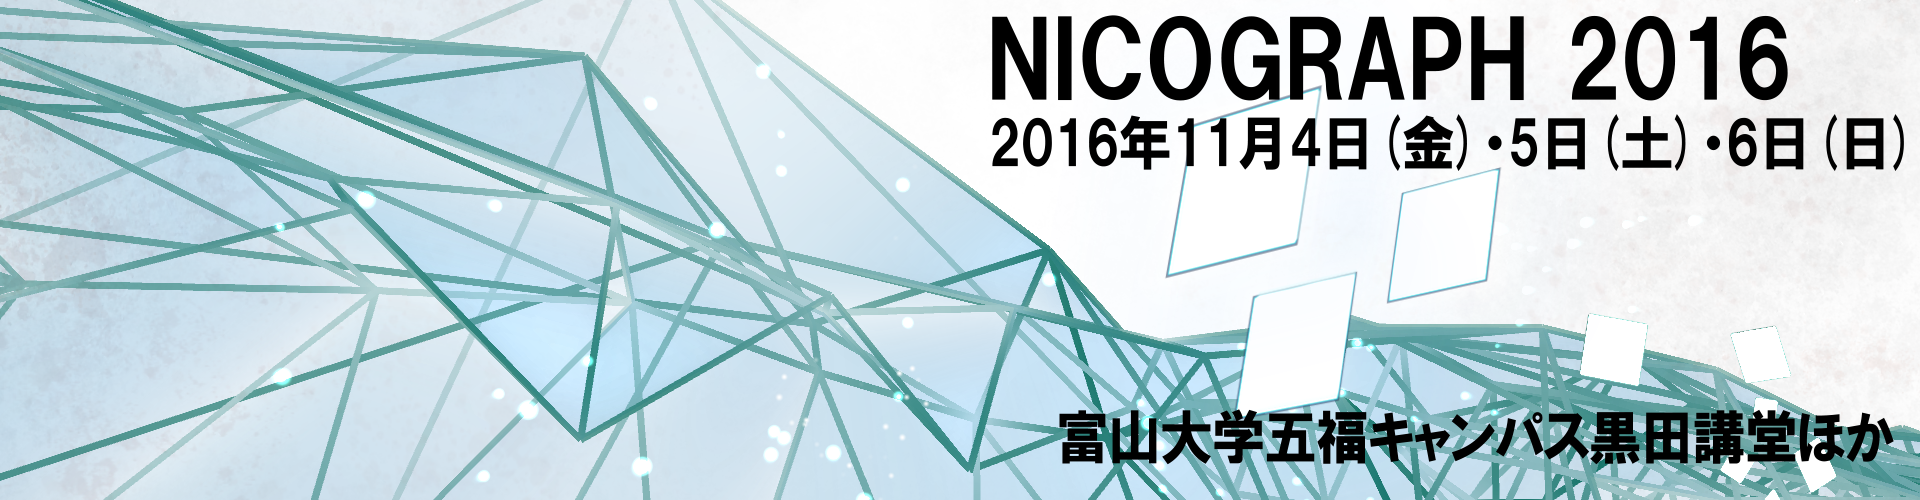 NICOGRAPH2016